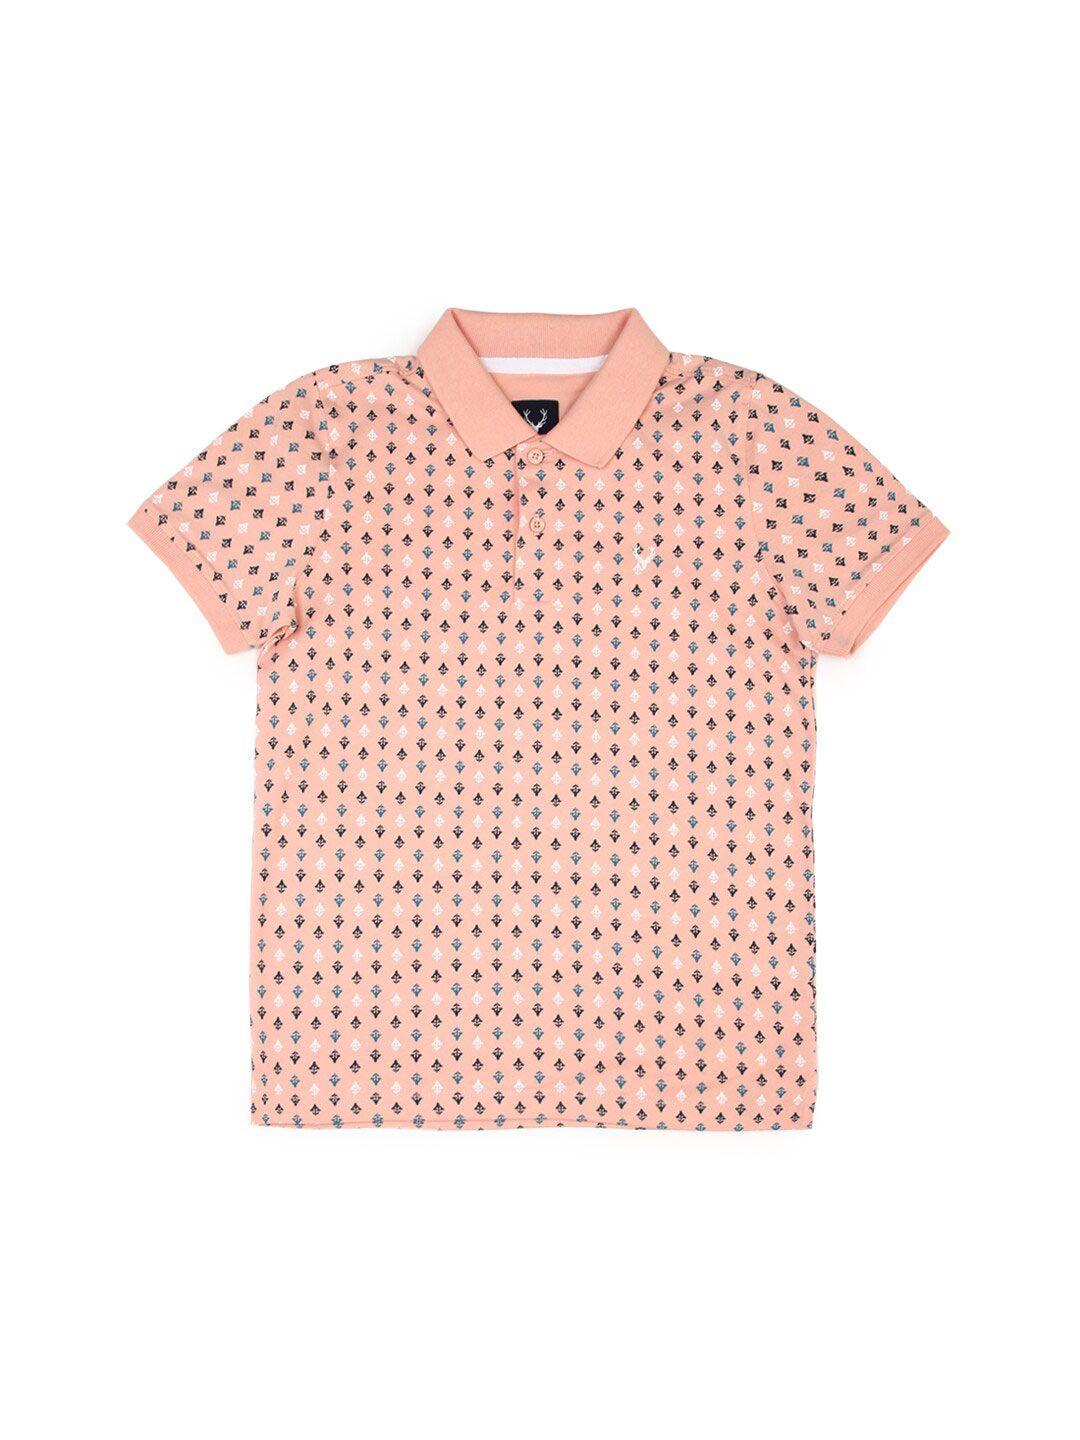 allen solly junior boys floral printed polo collar pure cotton t-shirt